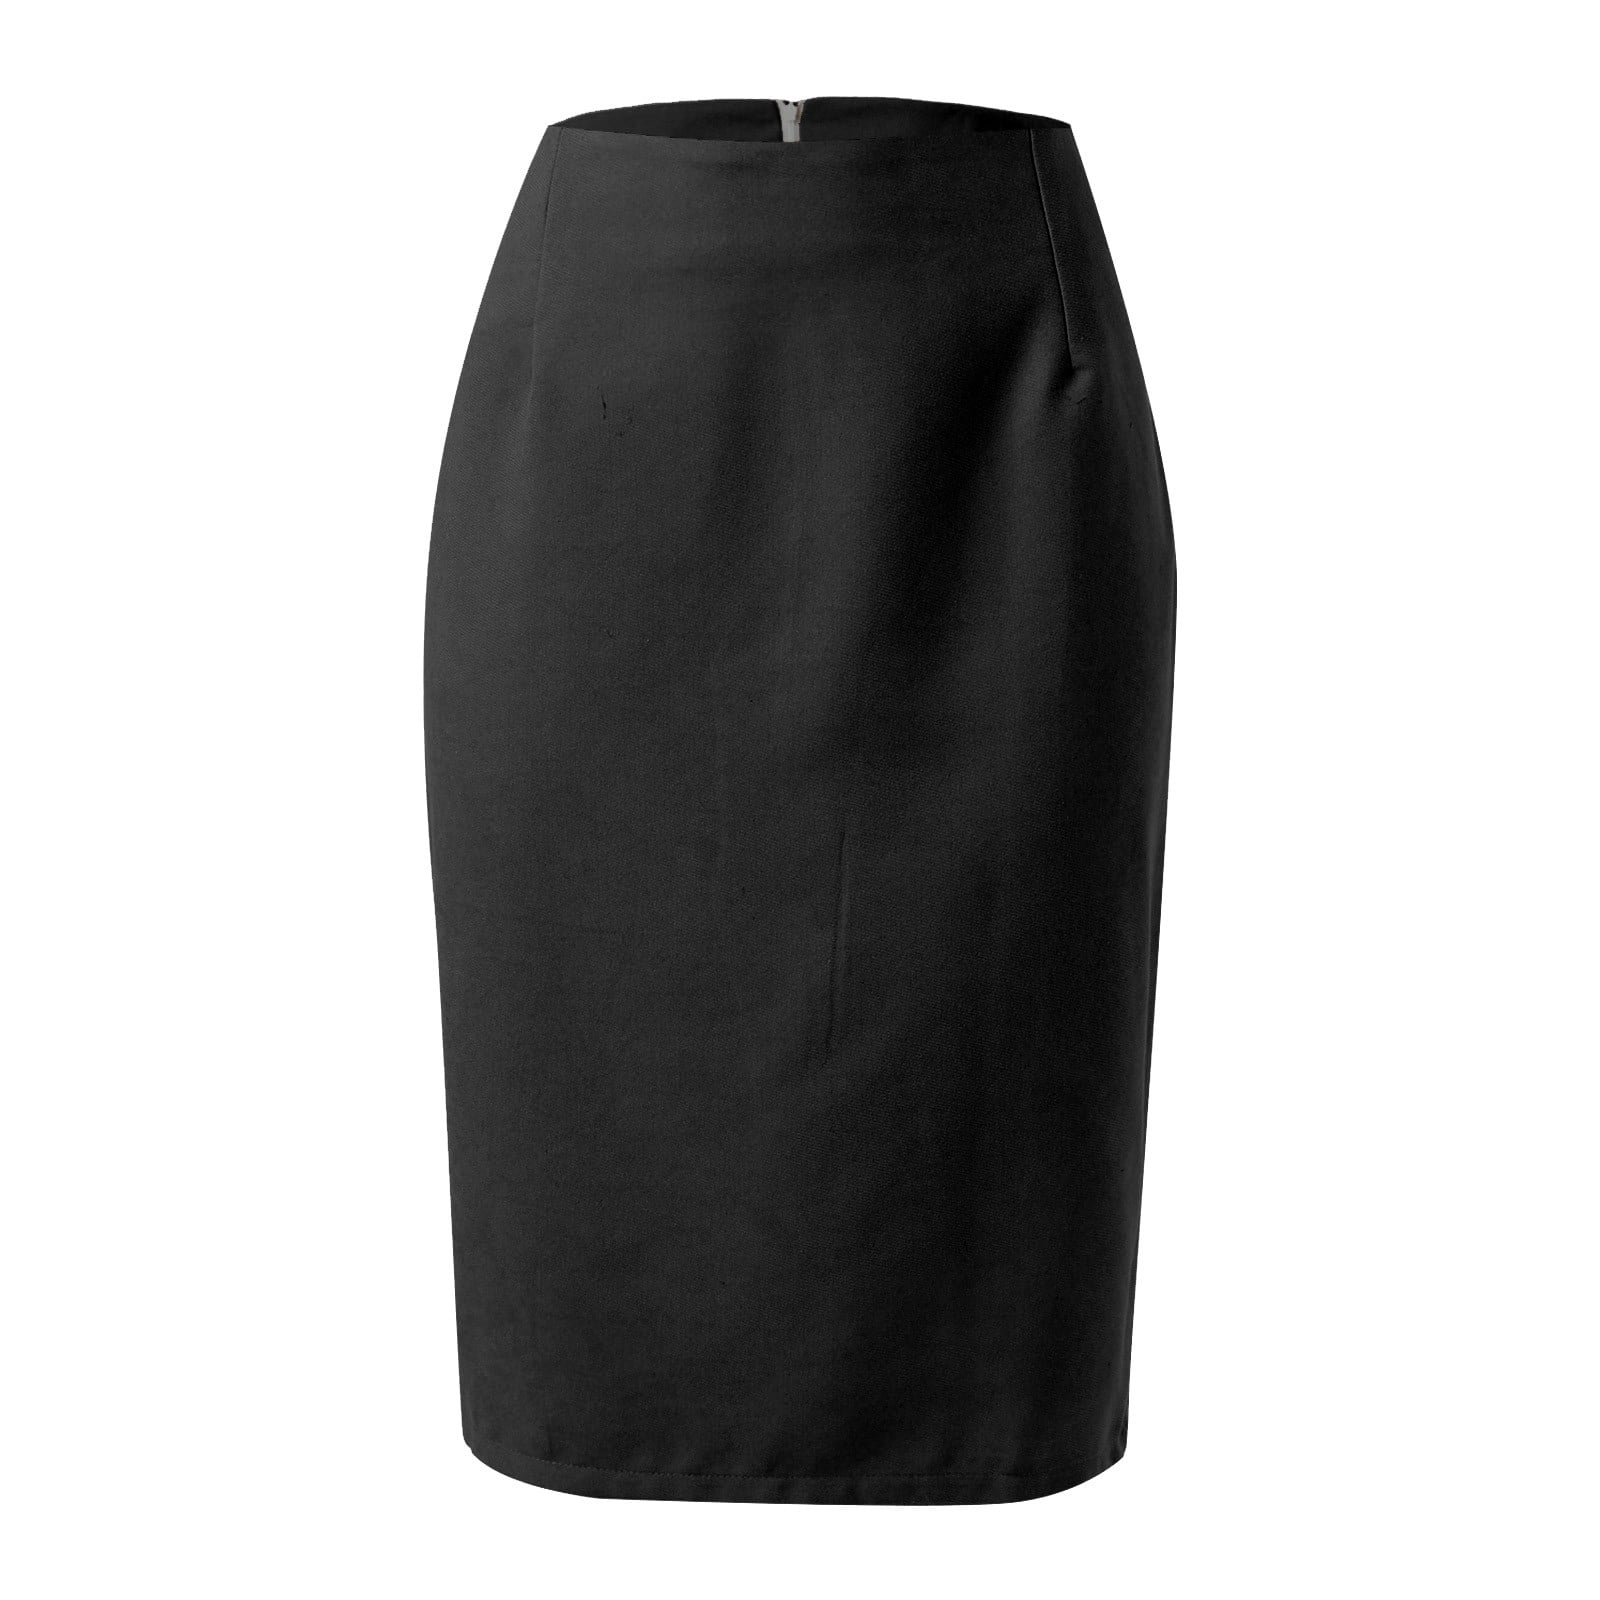 Entyinea Summer Skirts for Women Elegant Vintage Office Knee Length ...